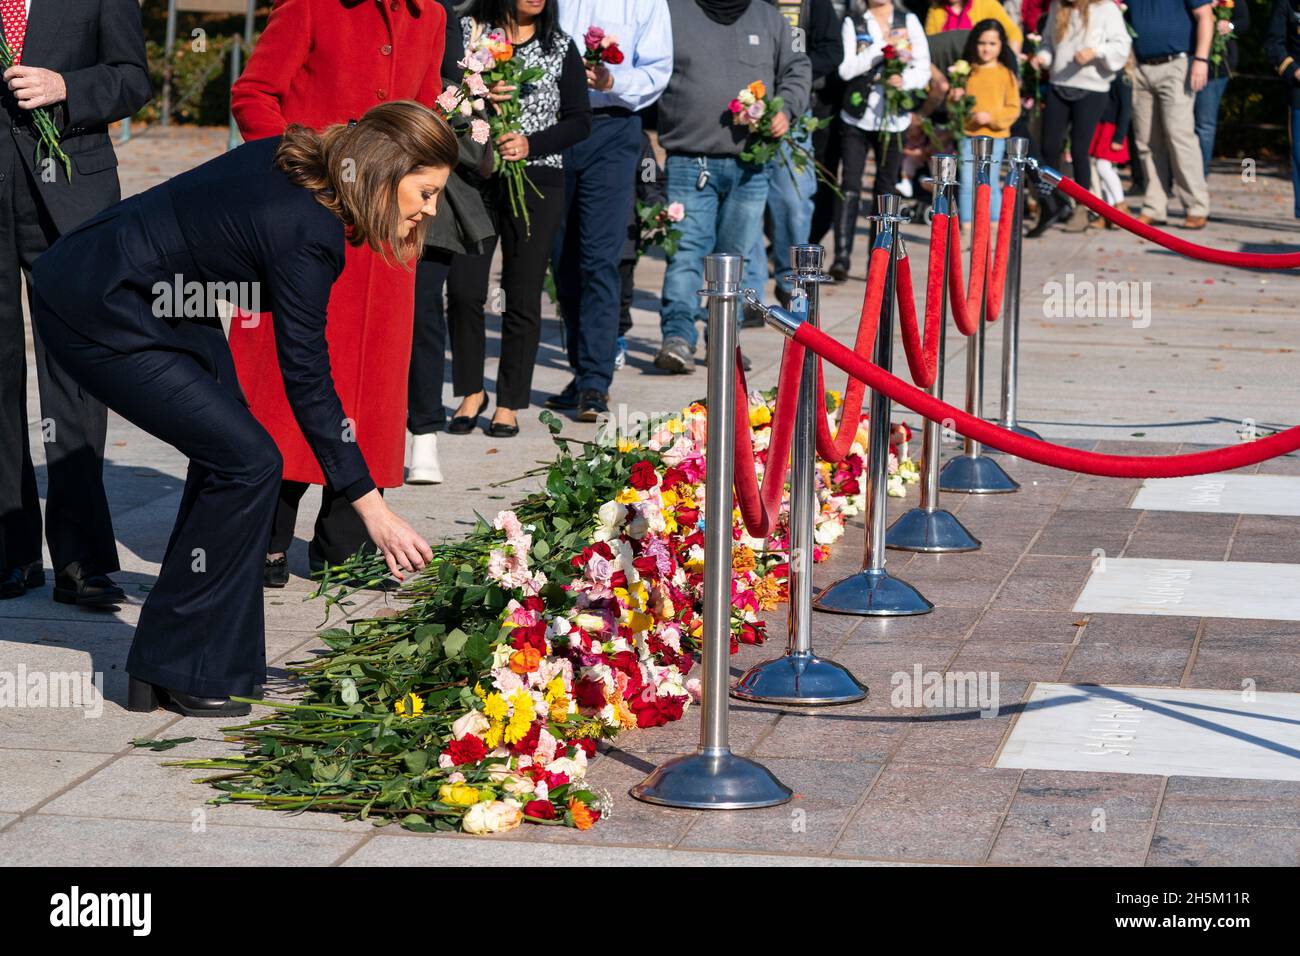 CBS Evening News Anchor Norah O'Donnell platziert Blumen während einer hundertjährigen Gedenkveranstaltung am Grab des unbekannten Soldaten, auf dem Nationalfriedhof von Arlington, Mittwoch, den 10. November 2021, in Arlington, Virginia. Quelle: Alex Brandon/Pool via CNP /MediaPunch Stockfoto